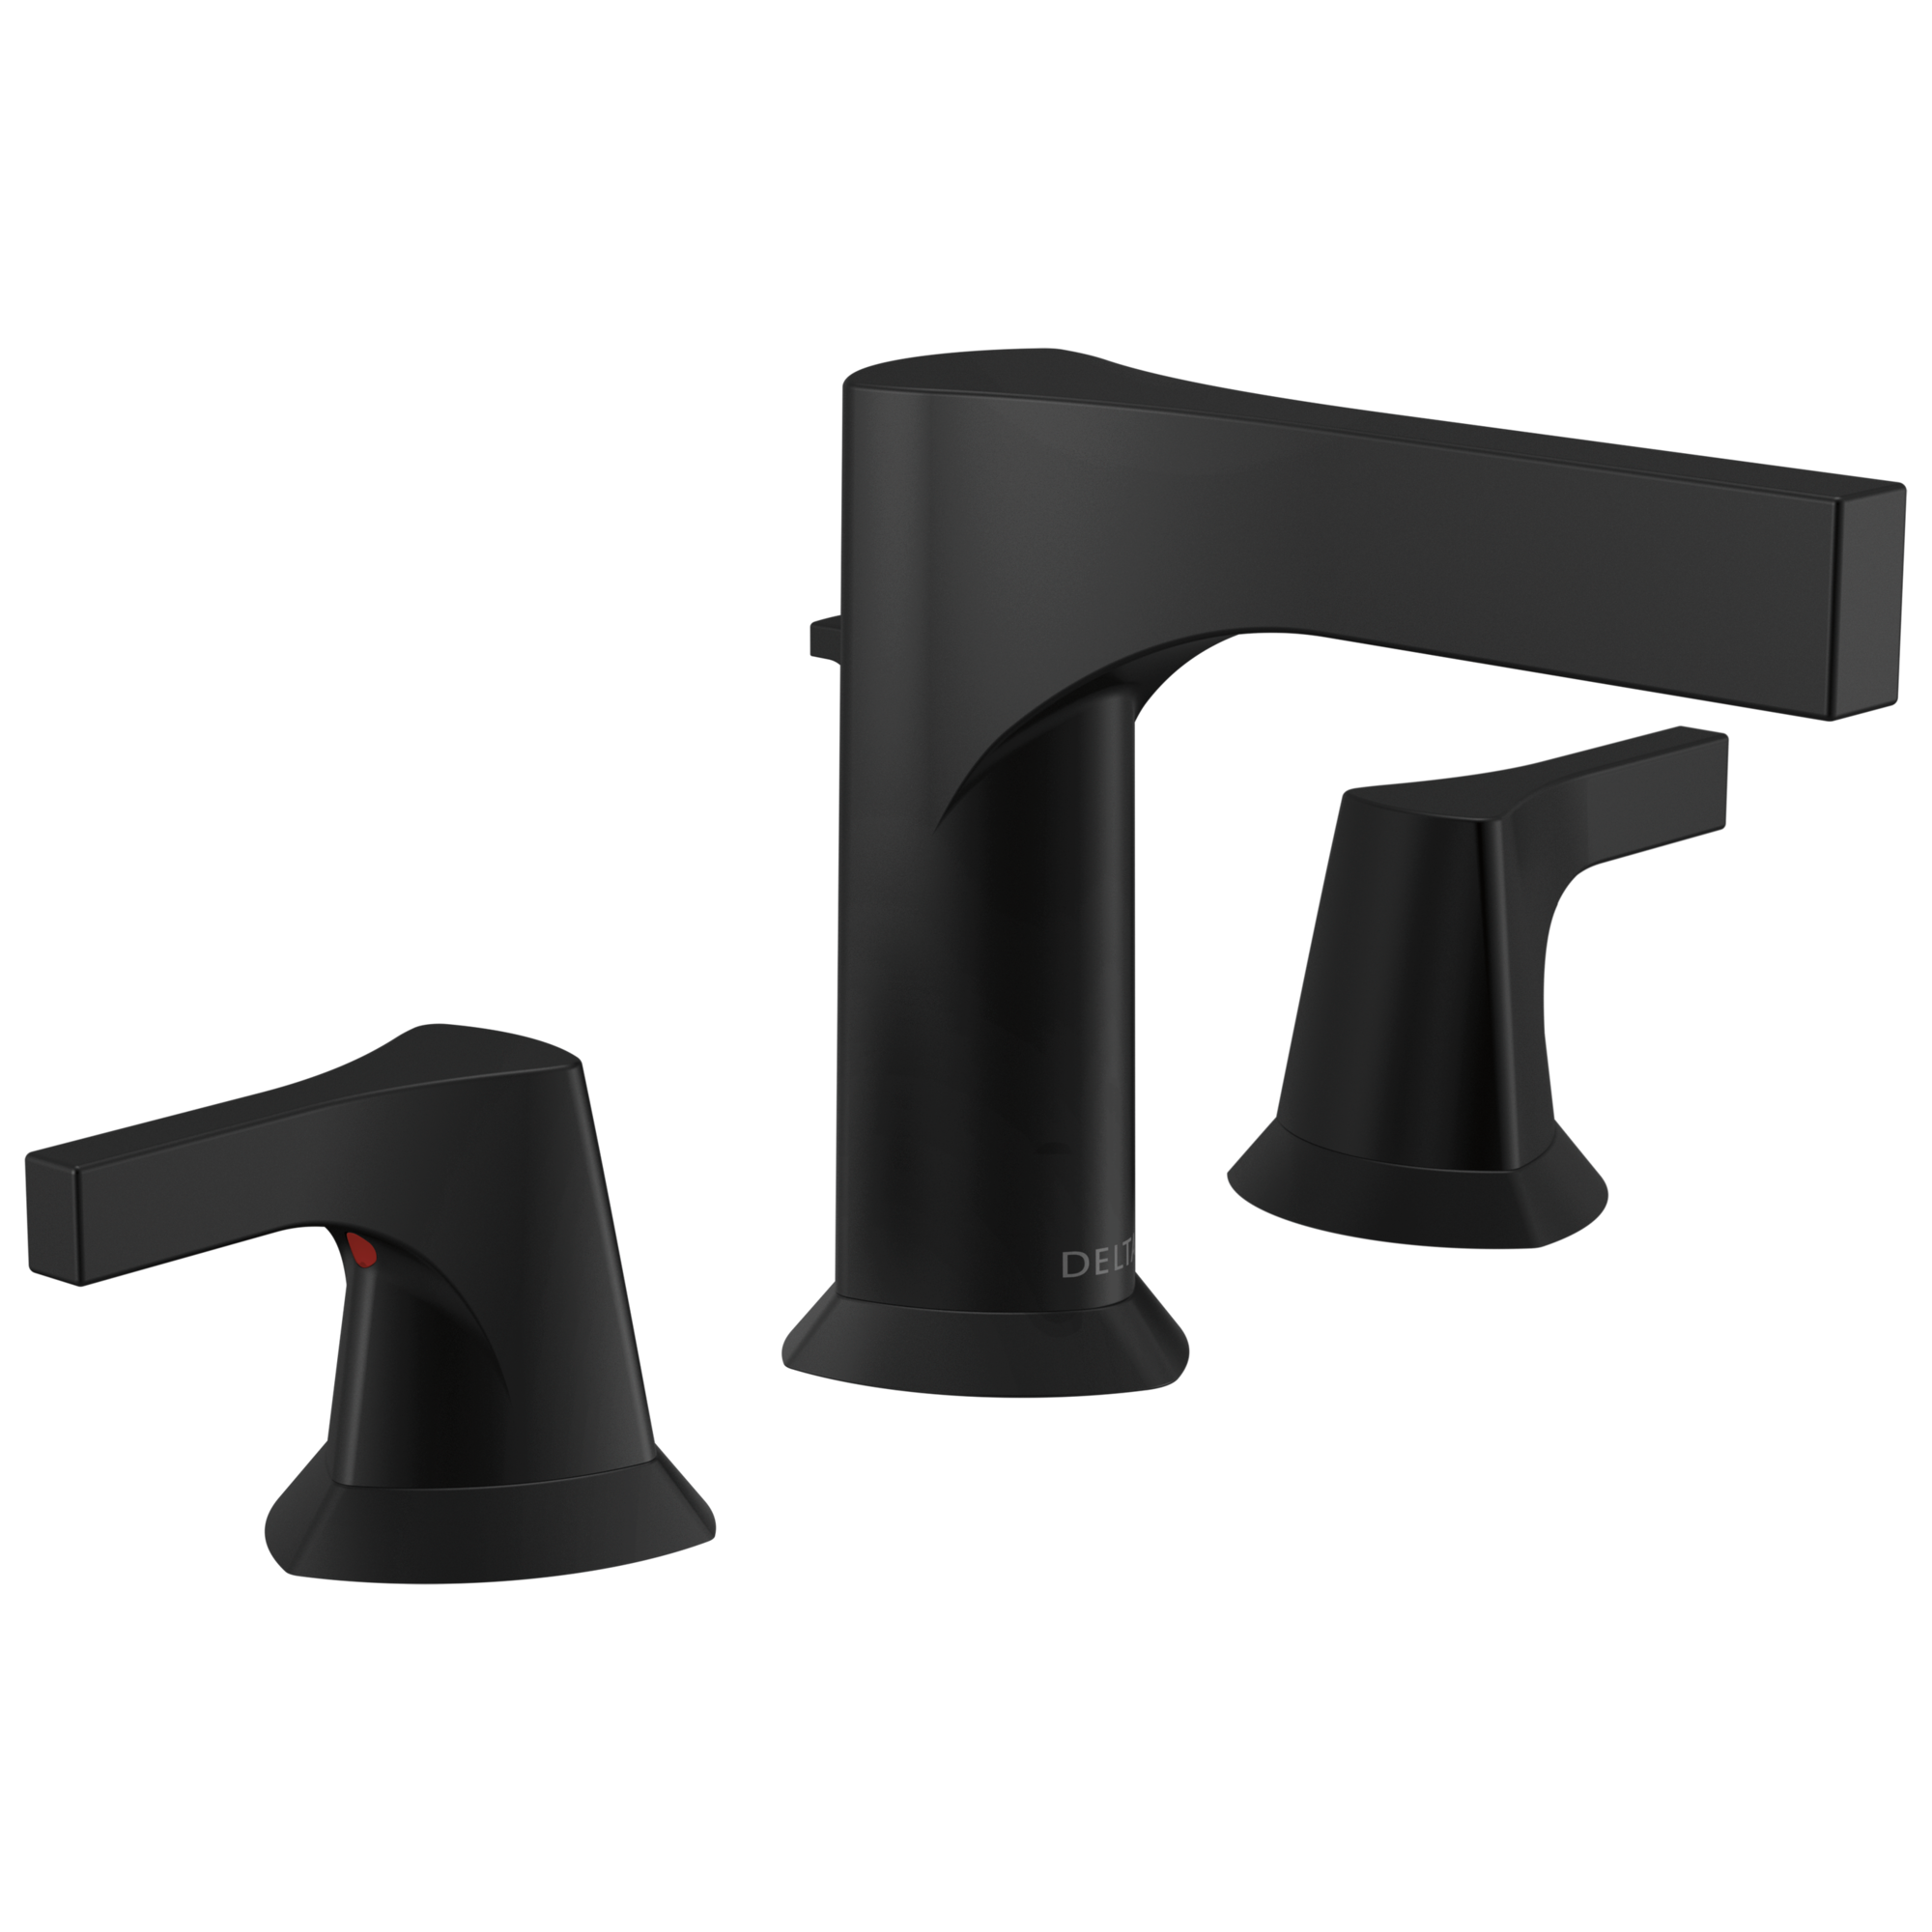 Delta Zura Two Handle Widespread Bathroom Faucet in Matte Black